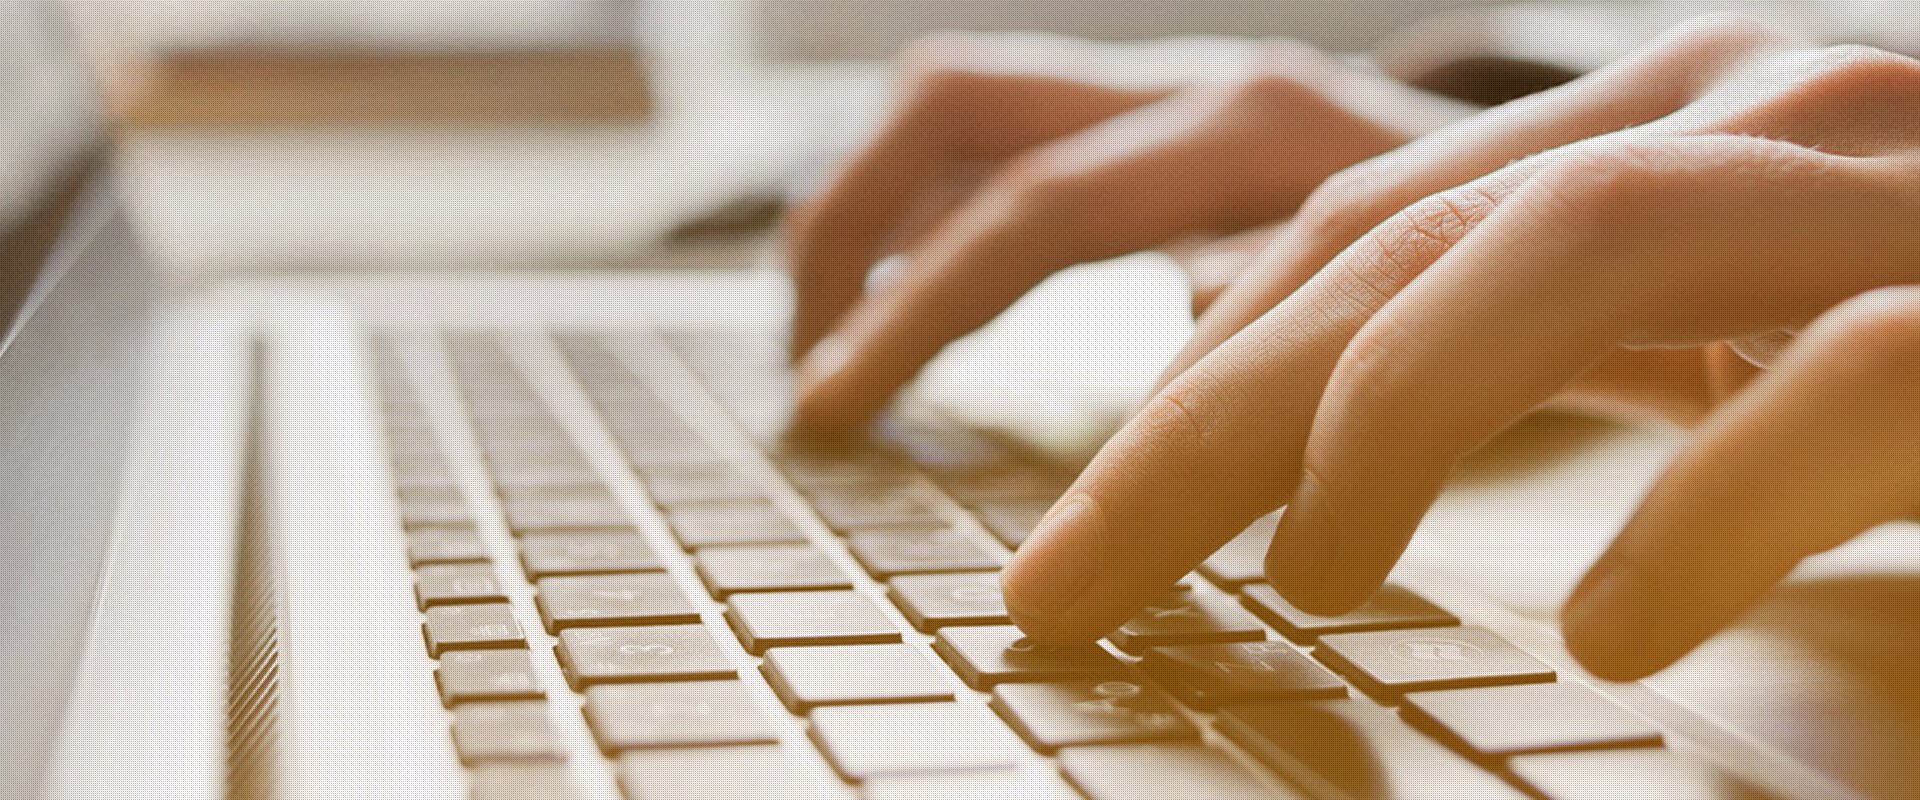 Hände tippen auf einer Laptop-Tastatur, Fokus auf den Fingern mit unscharfem Hintergrund.